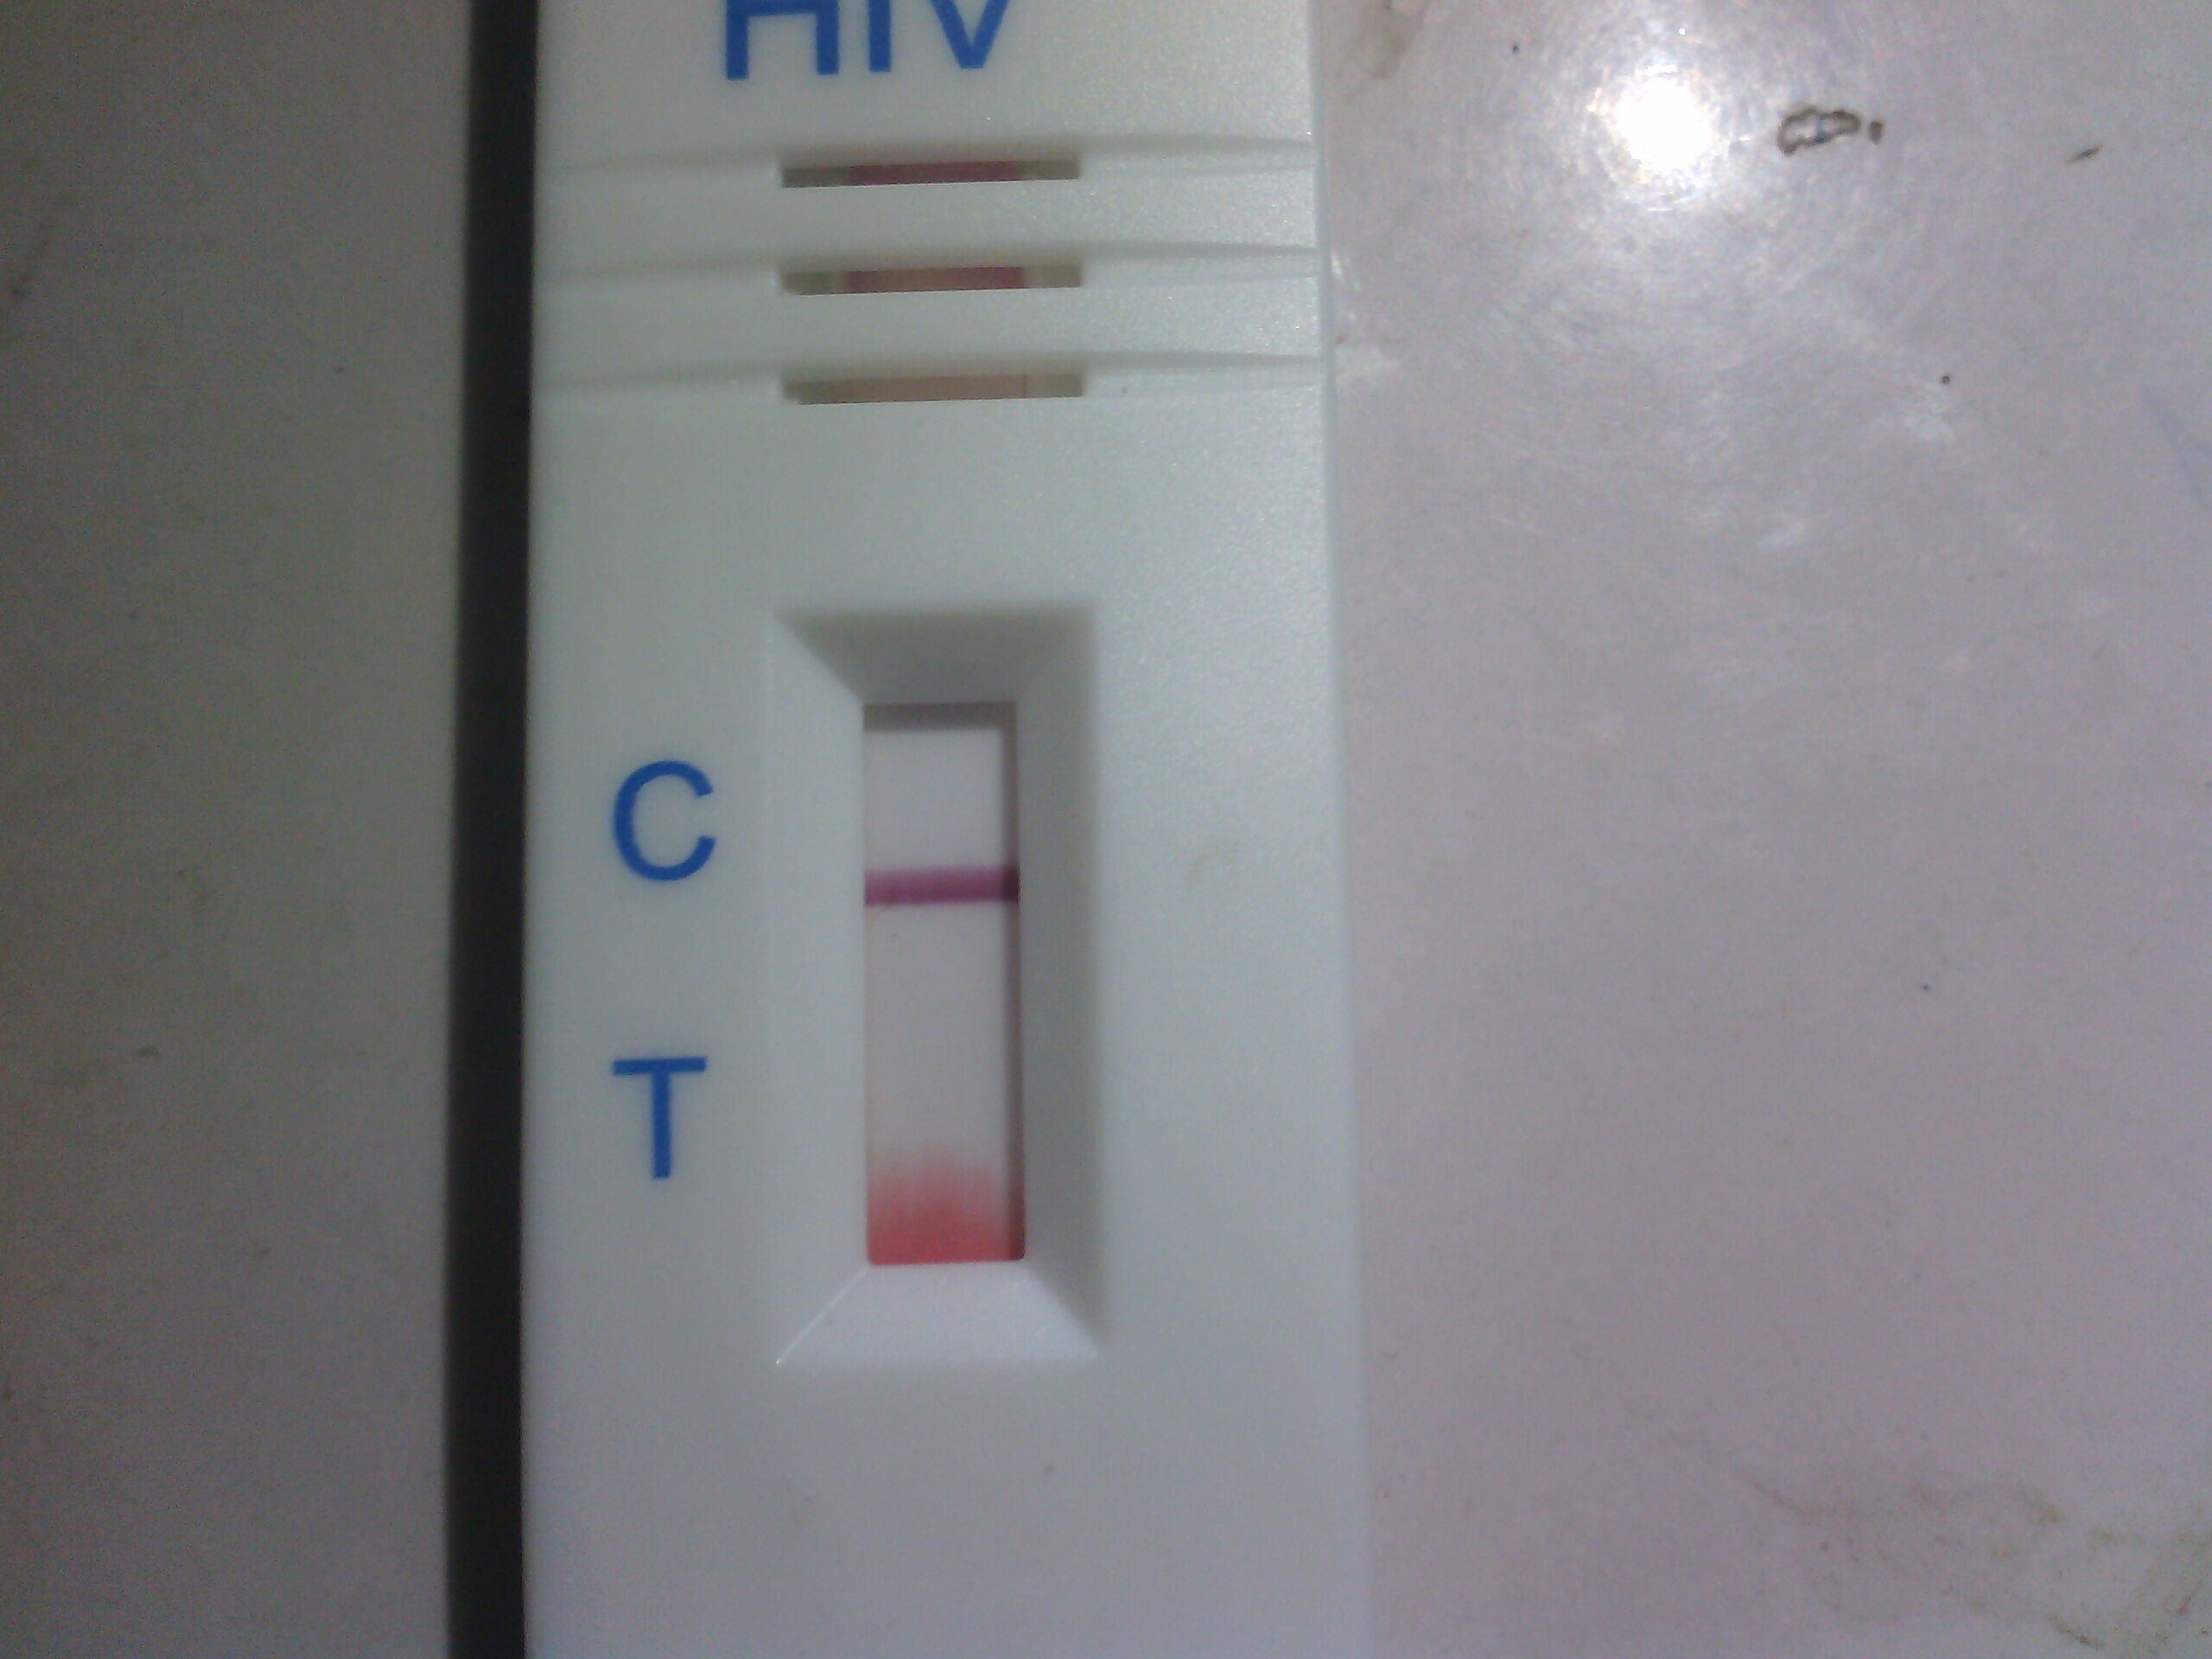 麻烦专家帮我看看艾滋测试纸显示的是不是阳性拜托专家仔细看看